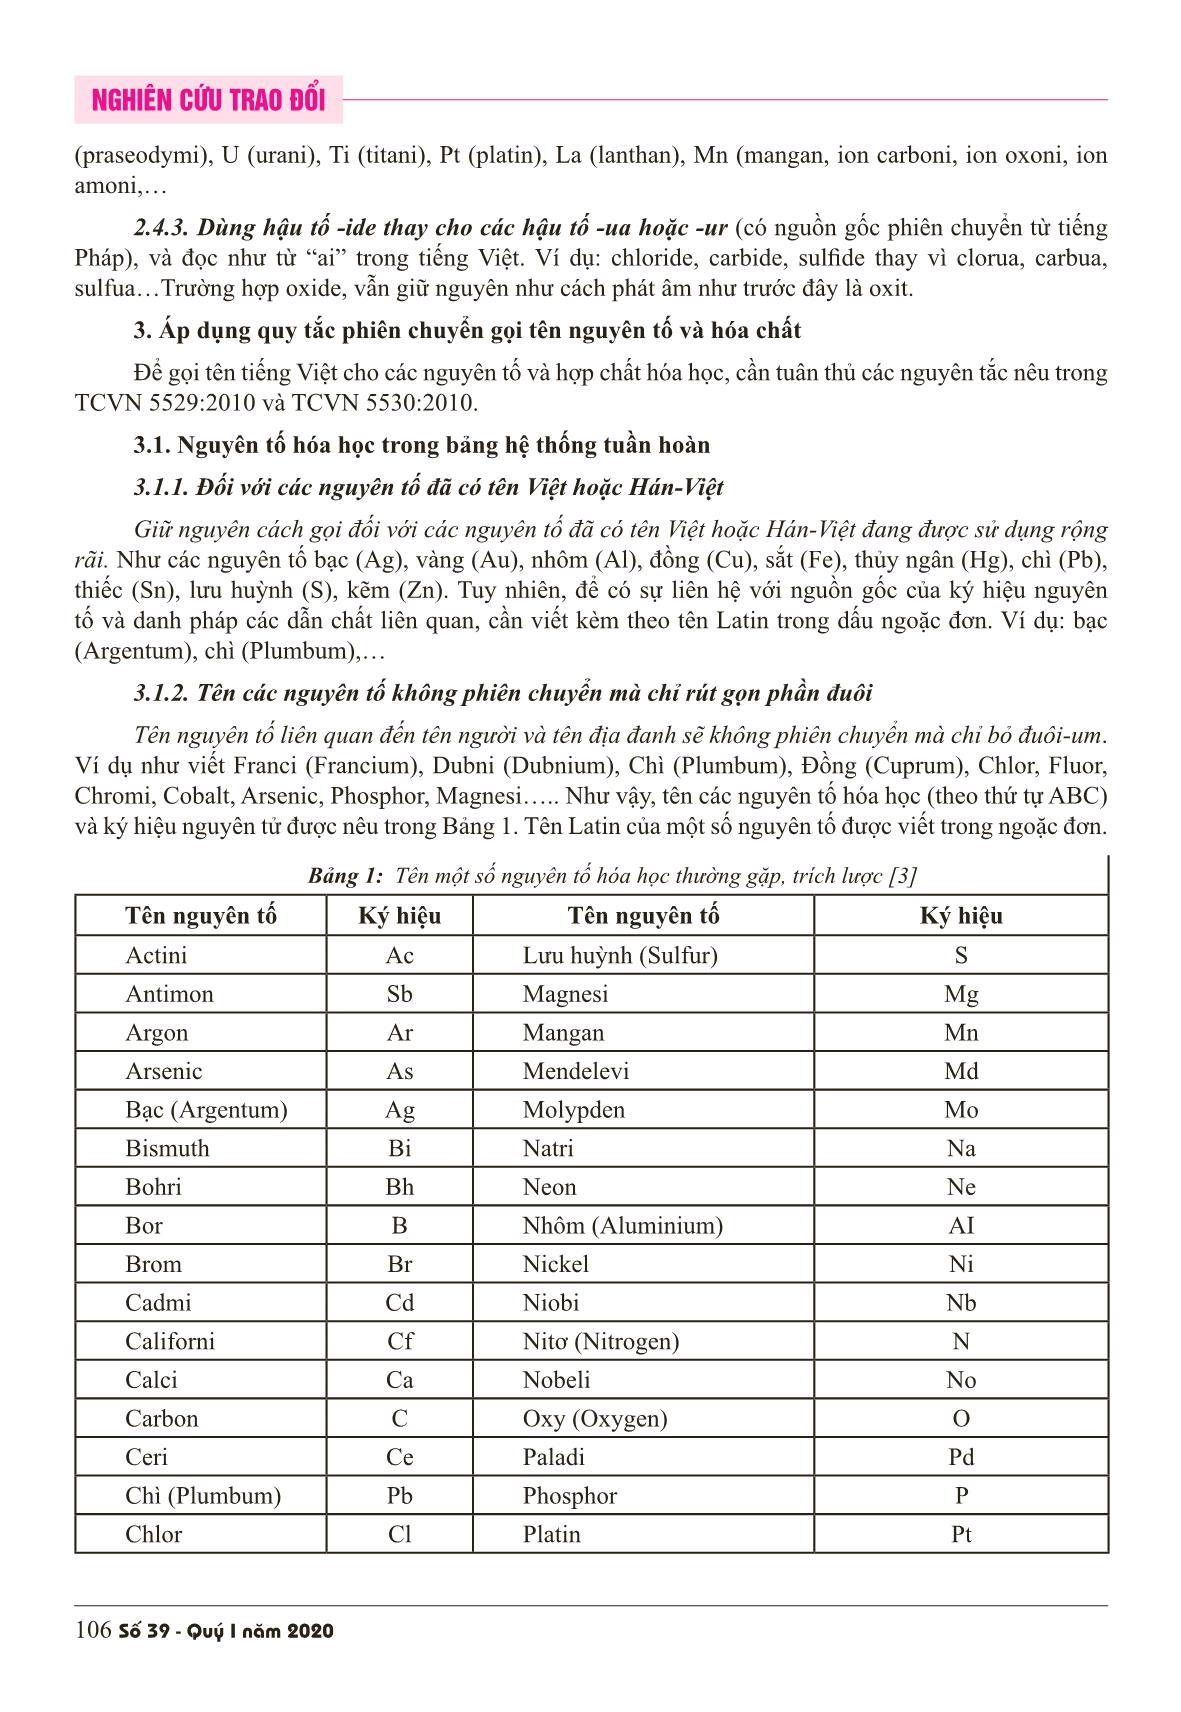 Áp dụng các quy tắc phiên chuyển và danh pháp iupac vào danh pháp hóa học Việt Nam trang 4